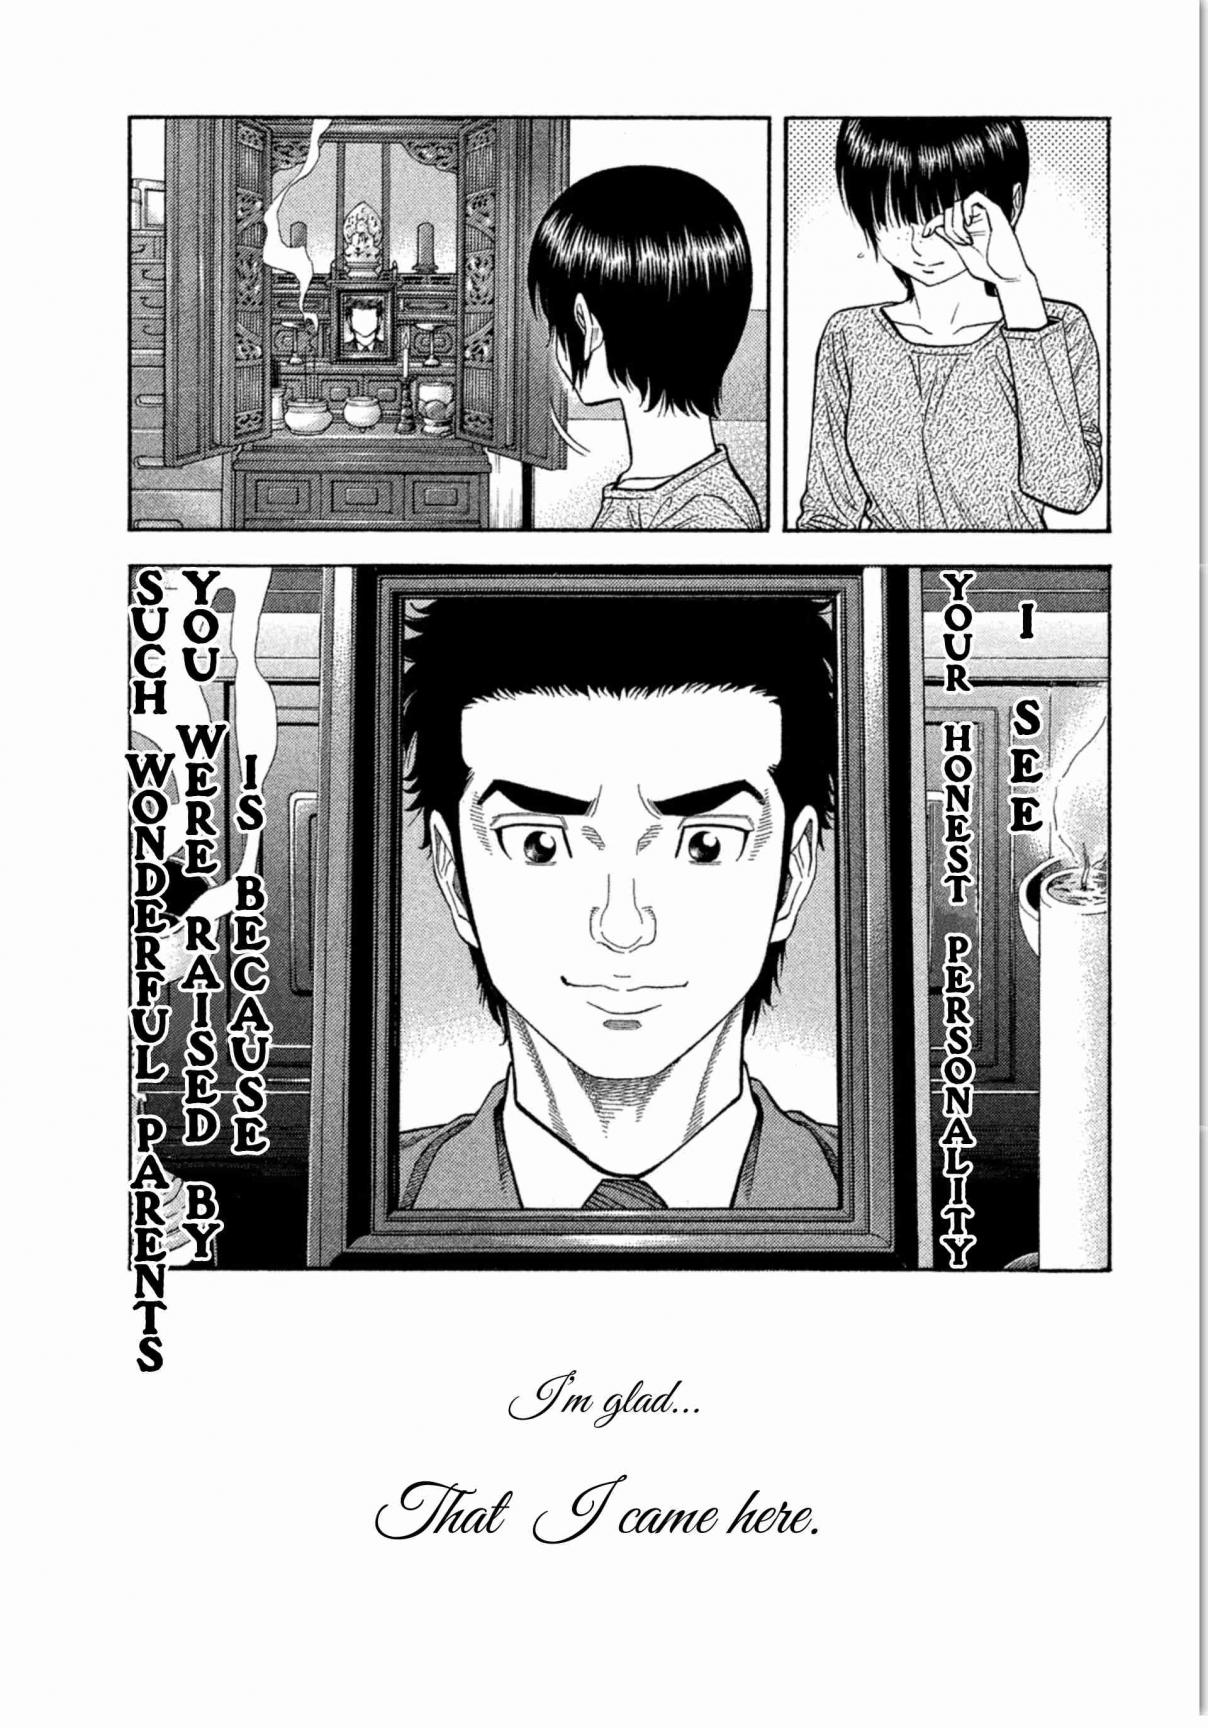 Kudan no Gotoshi Vol. 2 Ch. 10 Ayumi Baba < Part 4 >